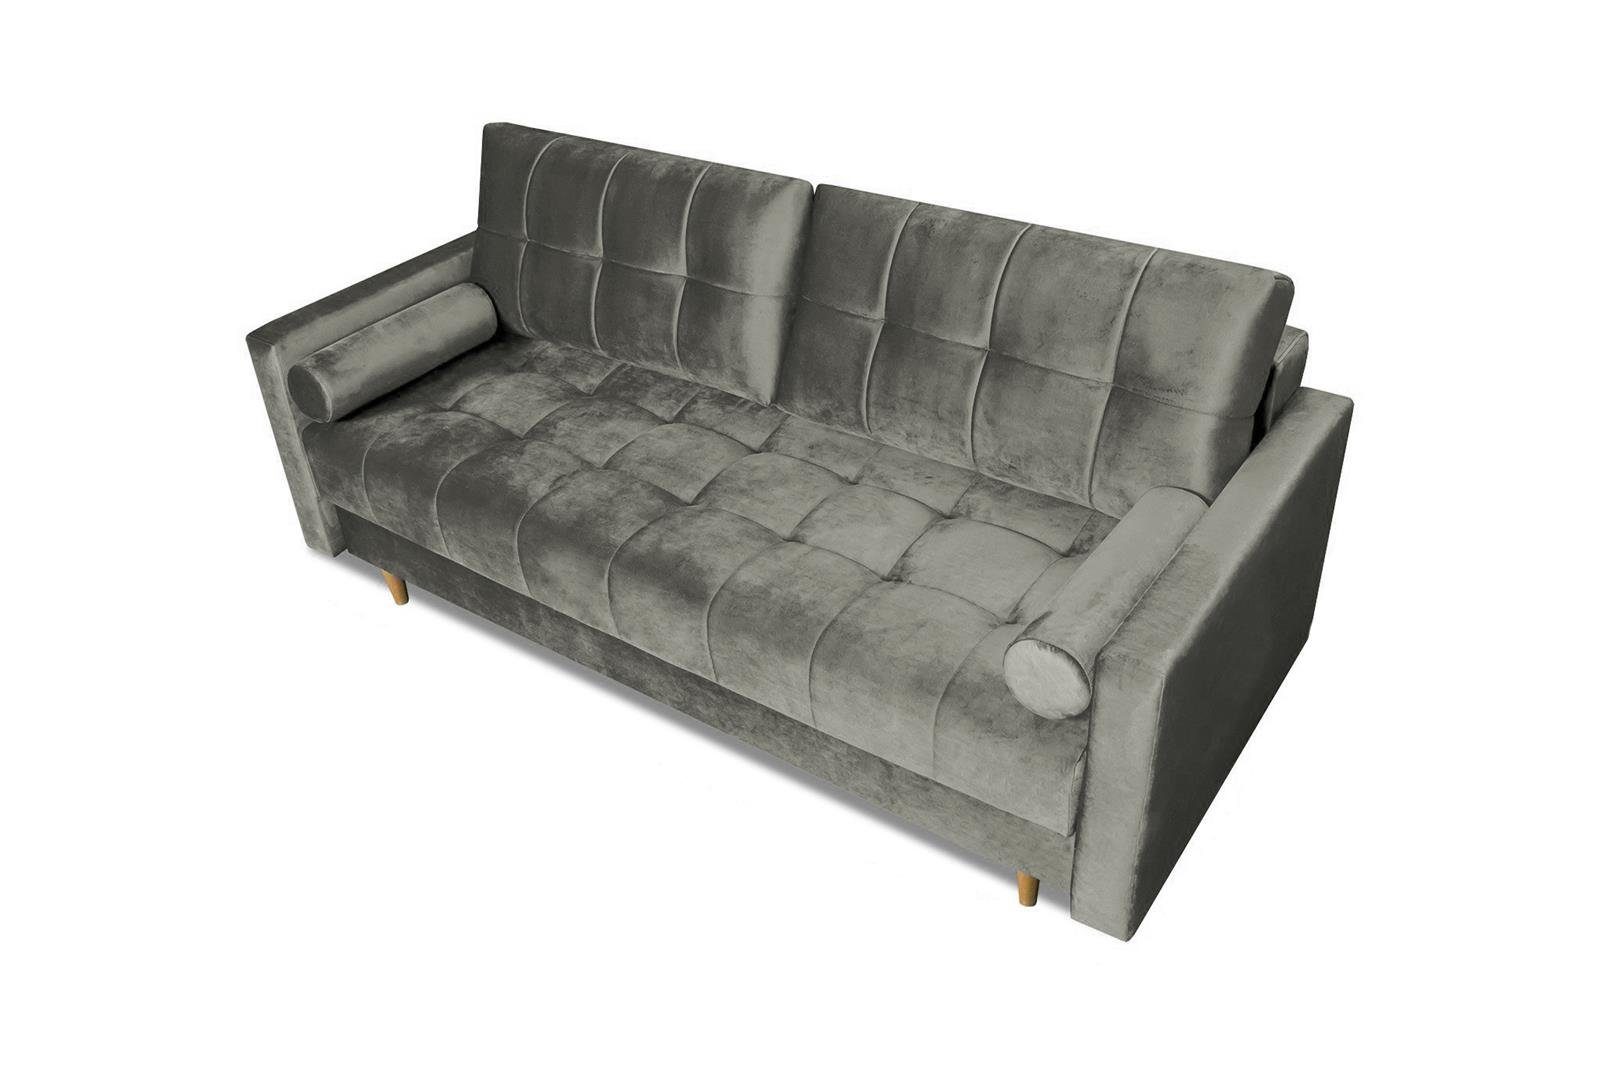 Beautysofa Schlafsofa skandinavisches (kronos und Wohnzimmer Khaki-Grau Randvi, im Bettkasten, für Polstersofa, mit Stil, Sofa 15) Bettfunktion Couch